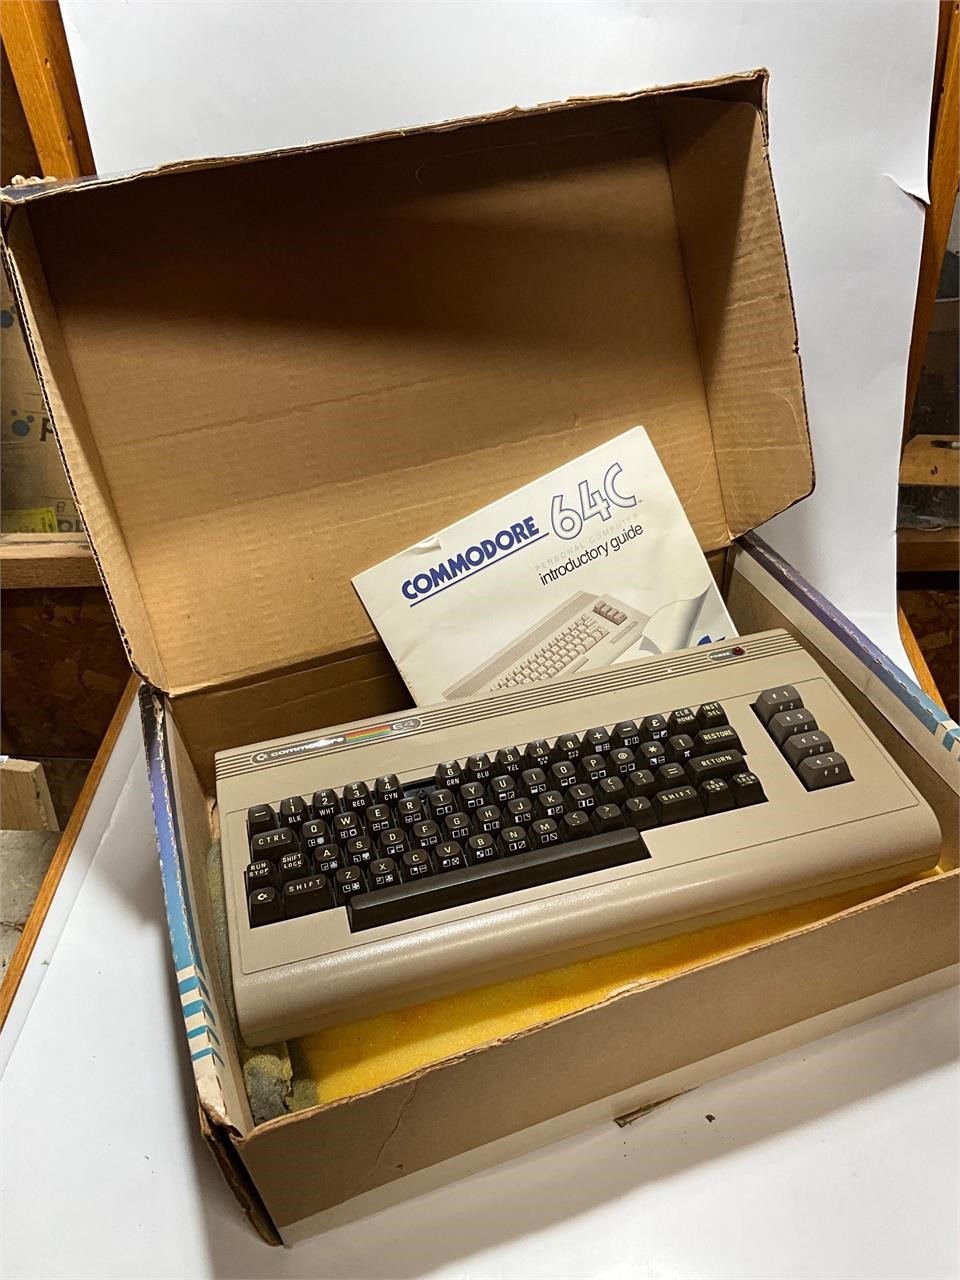 Commodore 64 in original box